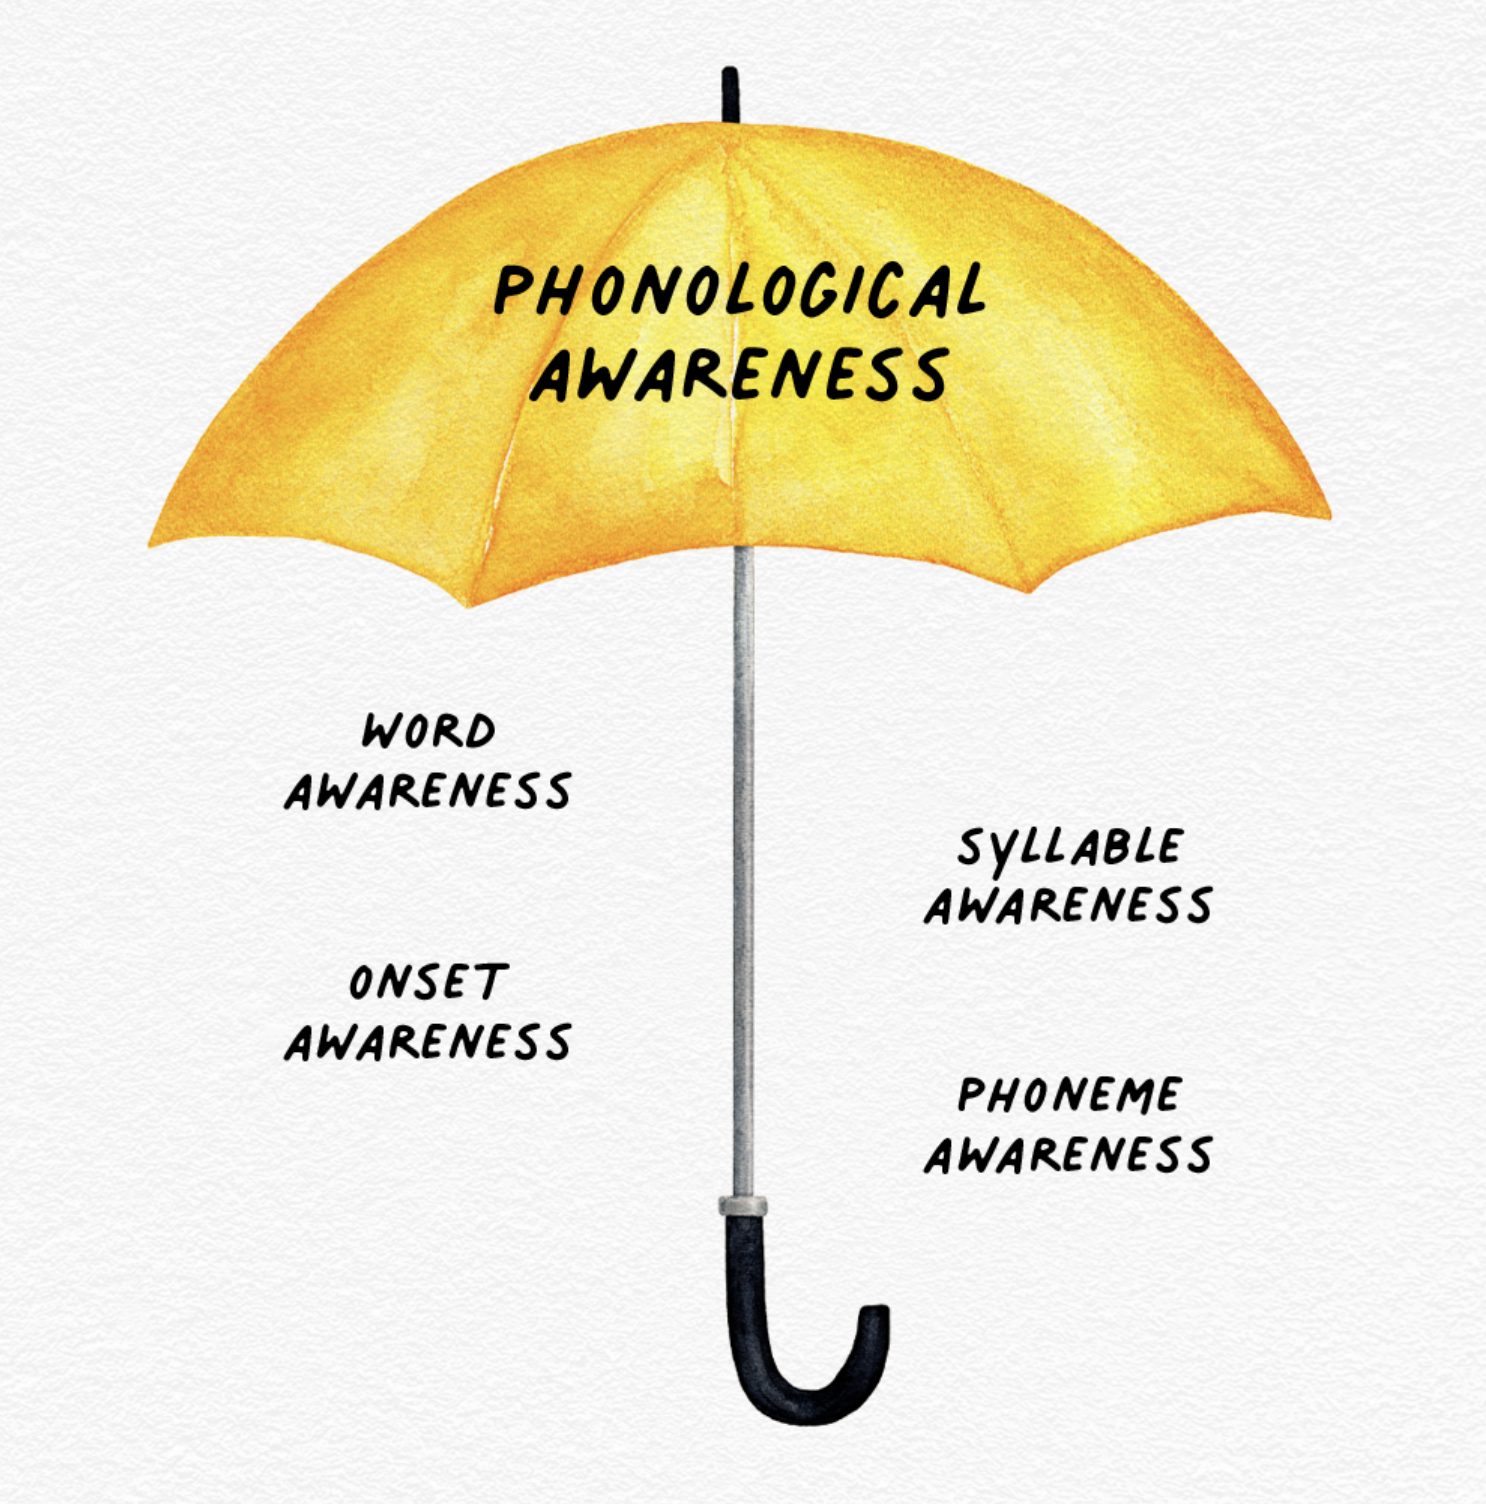 Phonological awareness umbrella